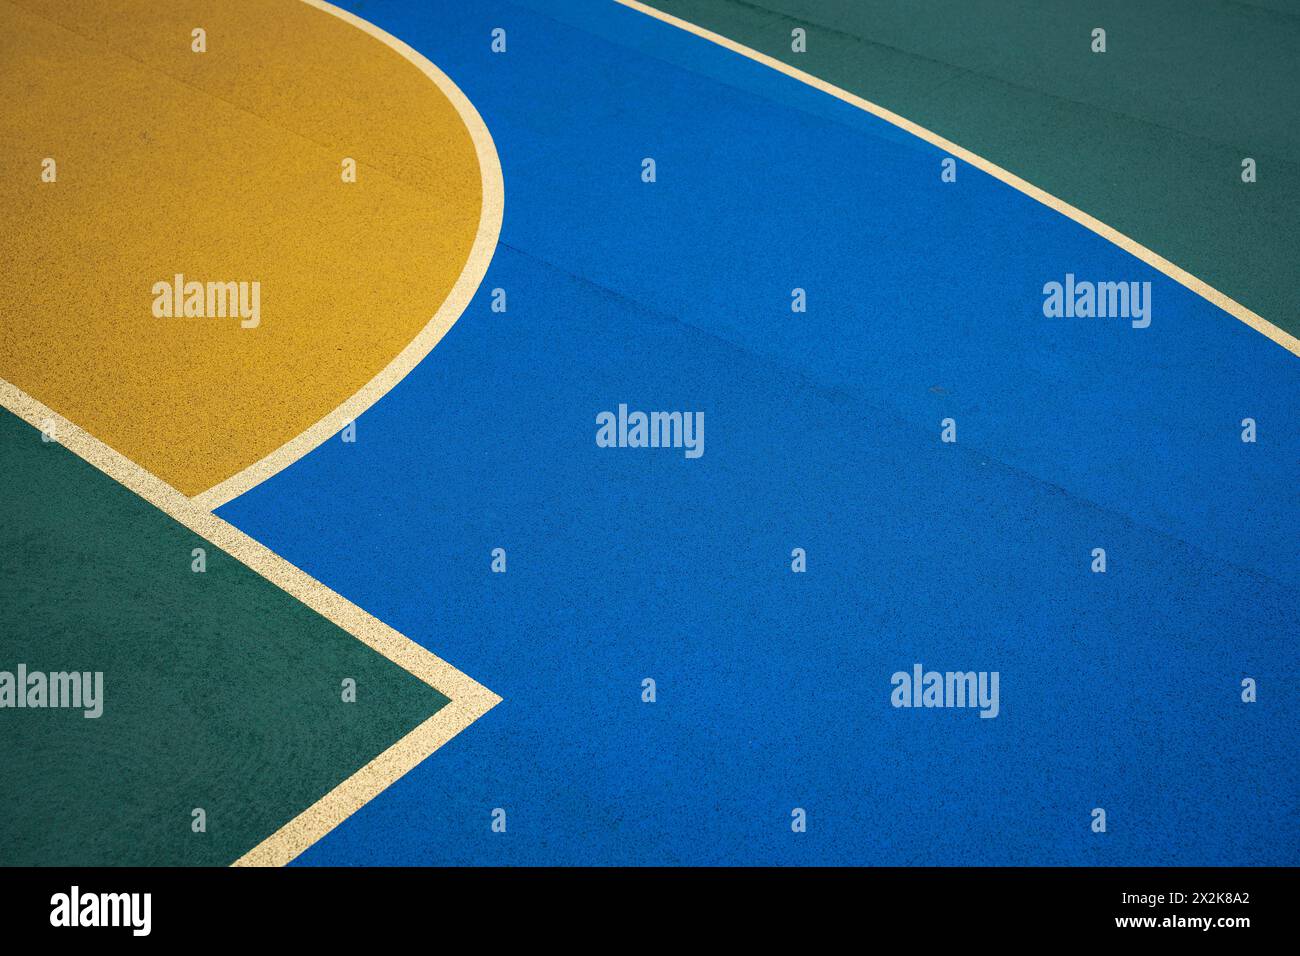 Primo piano di un campo da basket con colori blu e giallo vivaci. L'immagine cattura le linee nette e i motivi geometrici formati dal markin di corte Foto Stock